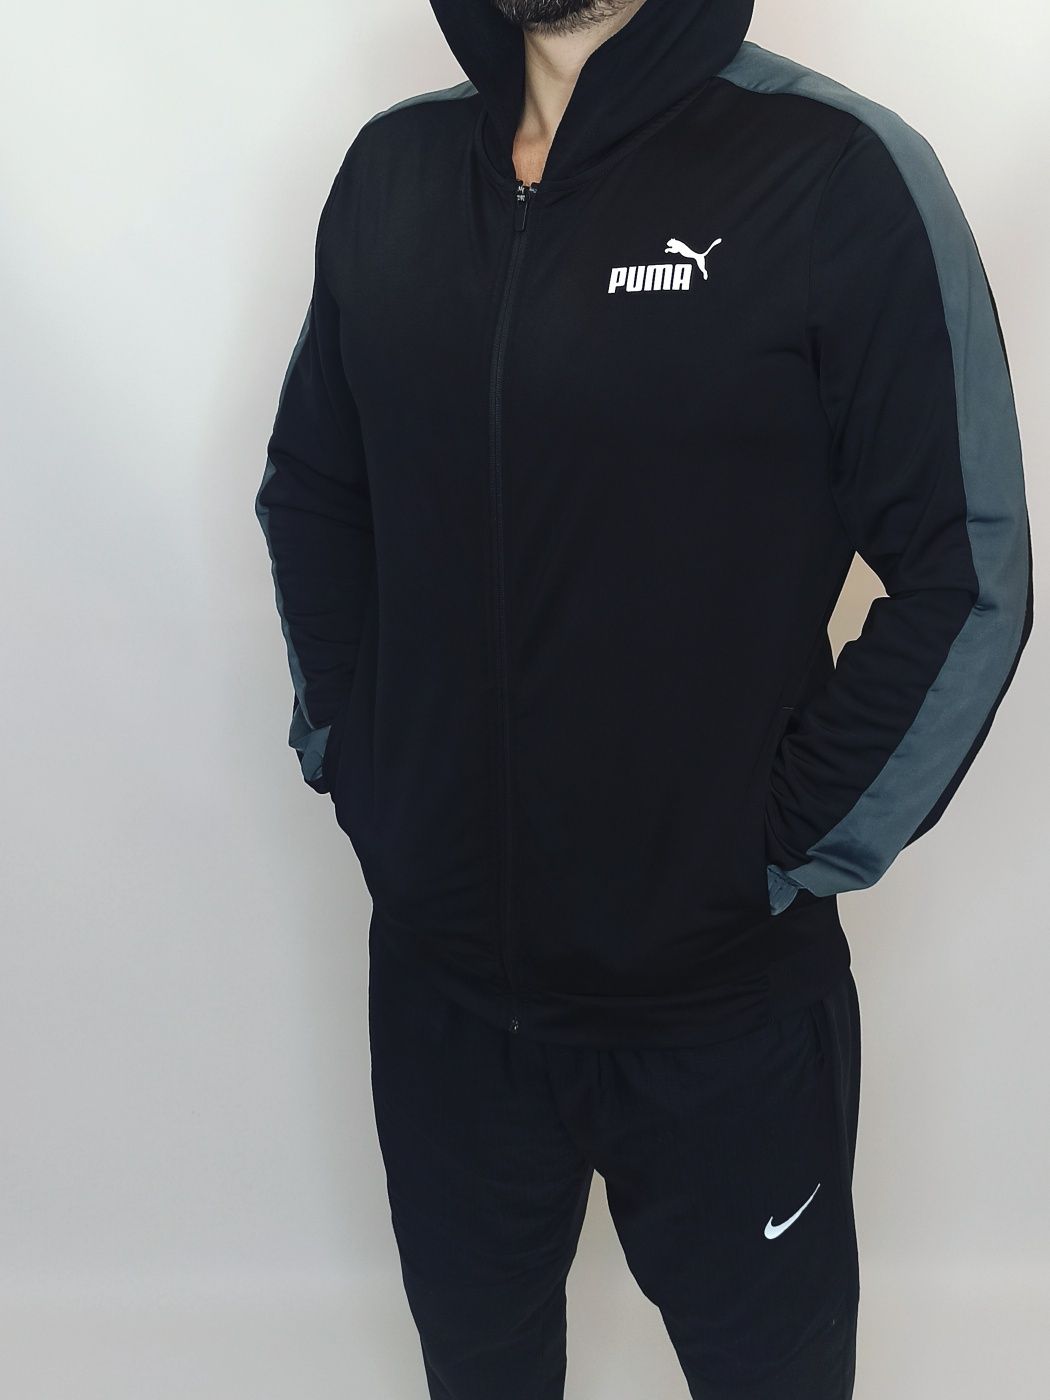 Зофта спортивная с капюшоном чёрная мужская Puma Размер М